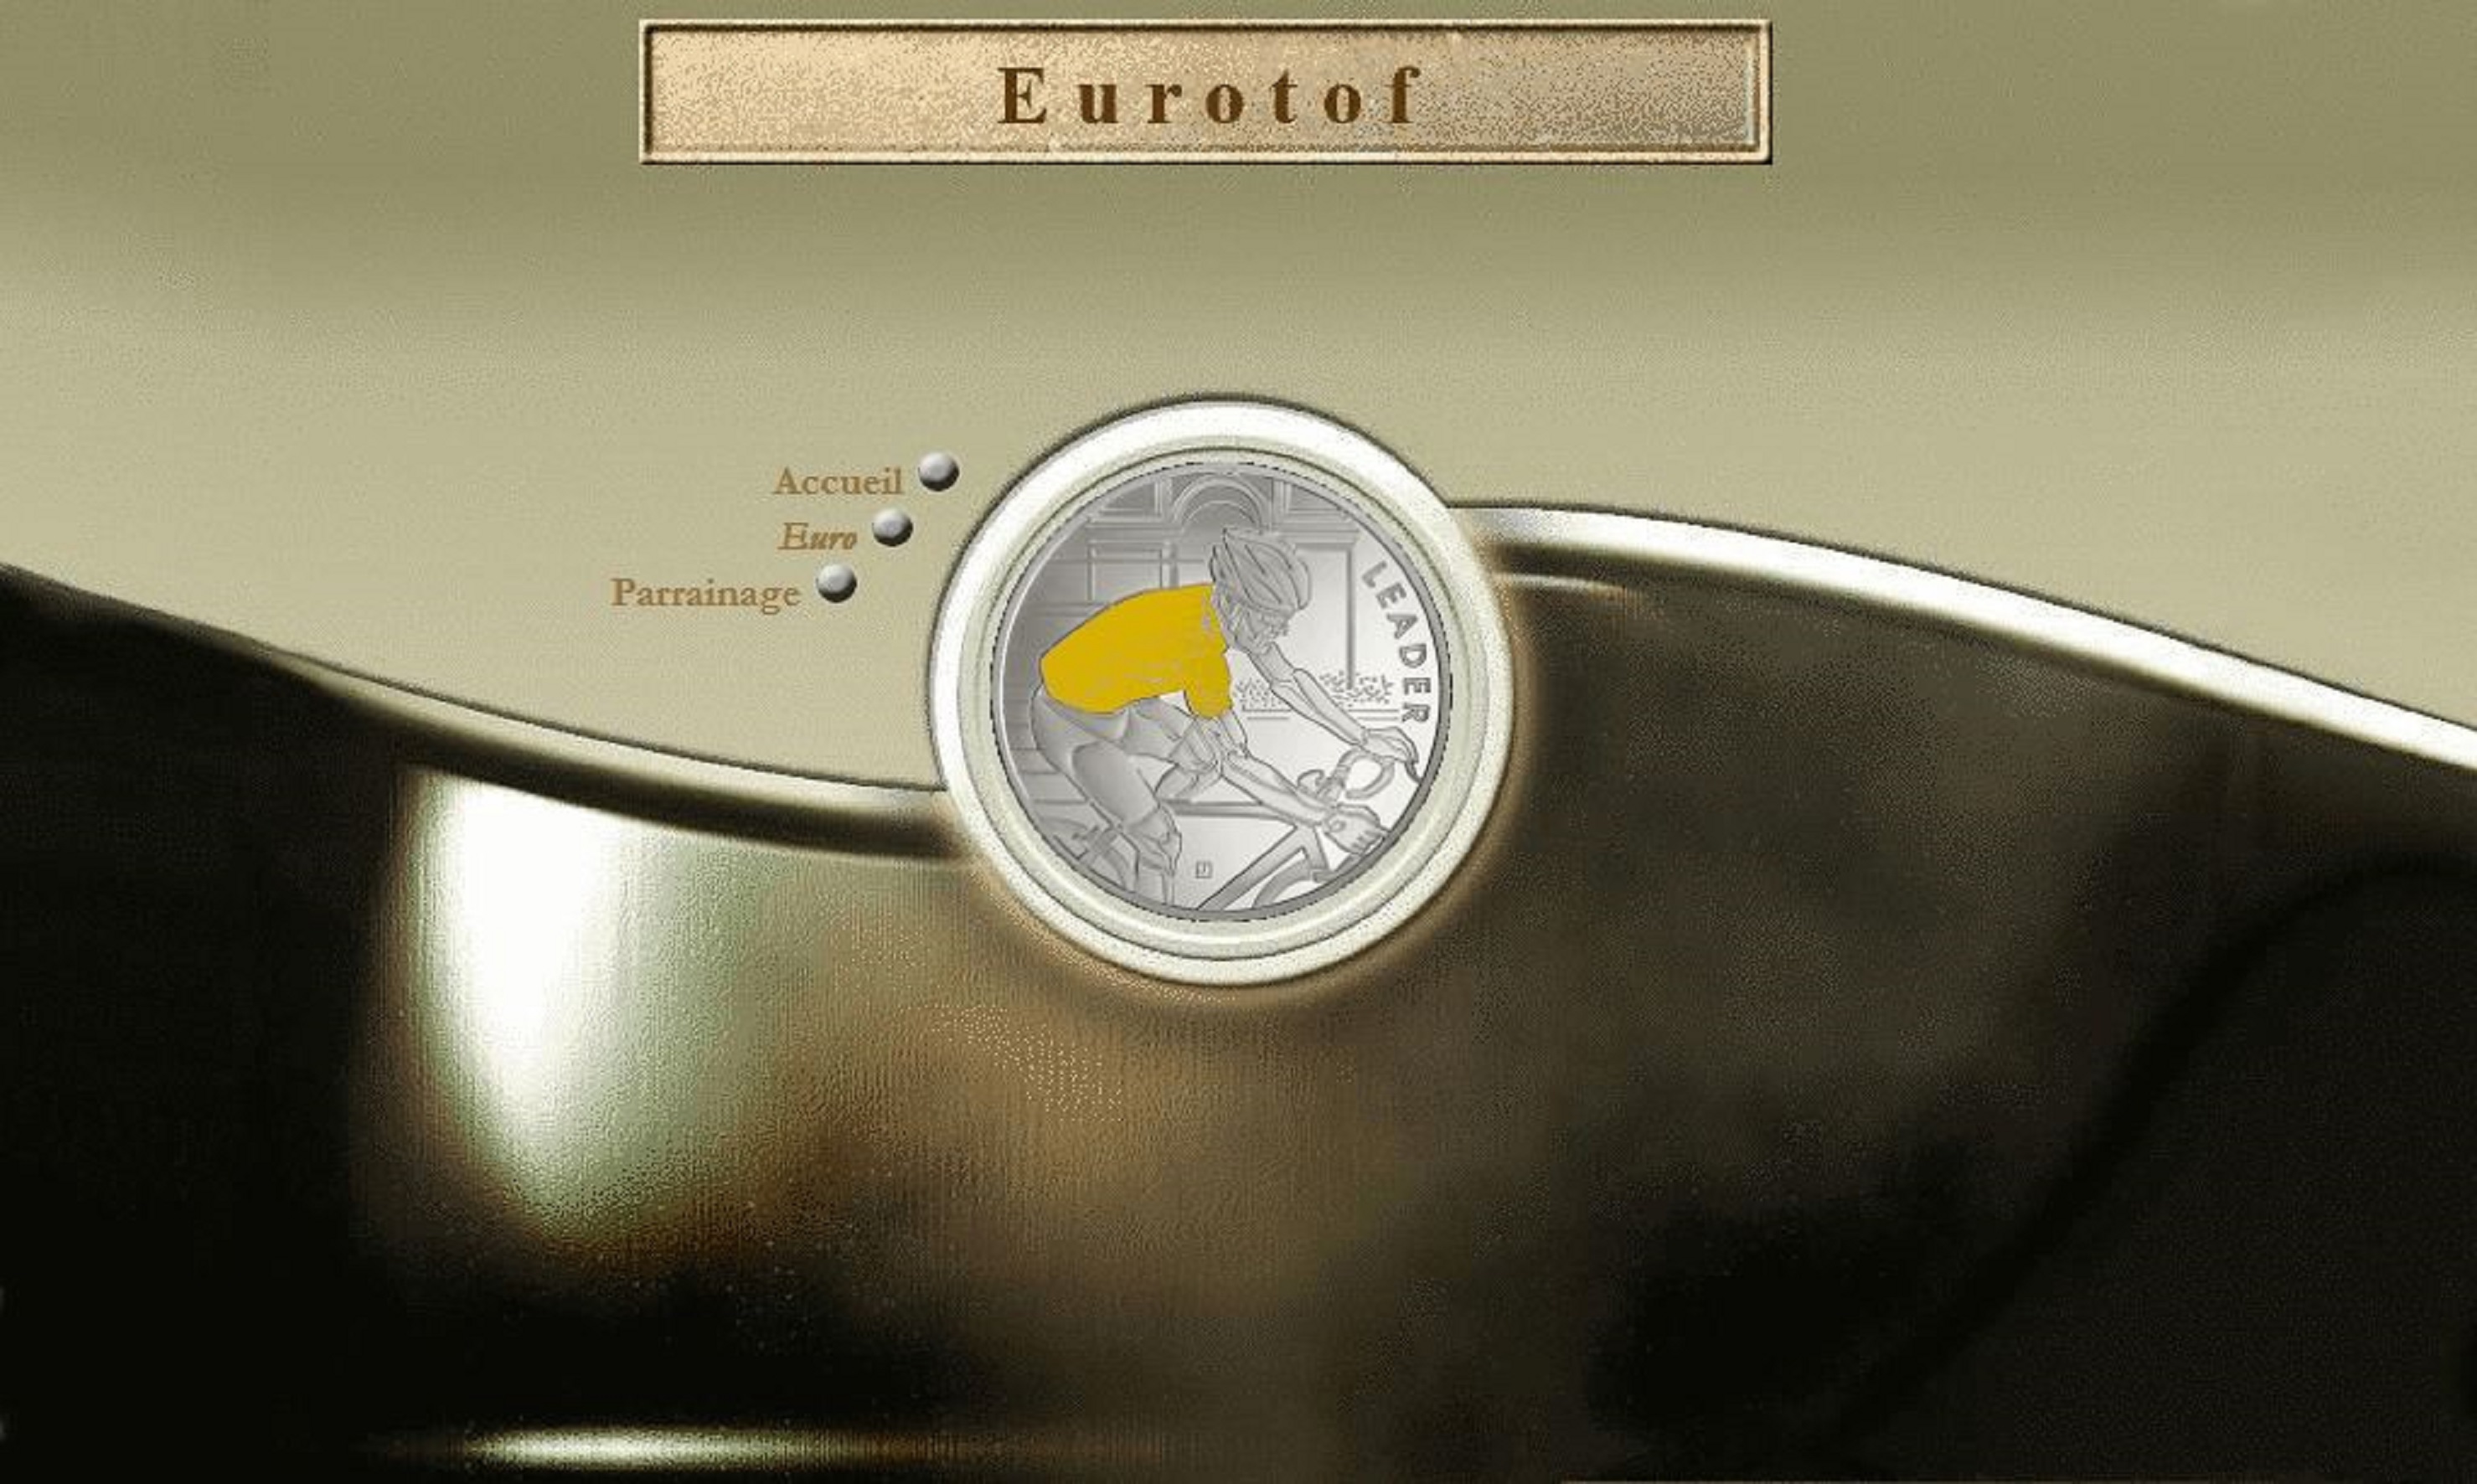 Collection pièce euro, Monnaie en double, Pièces commémoratives, Eurotof